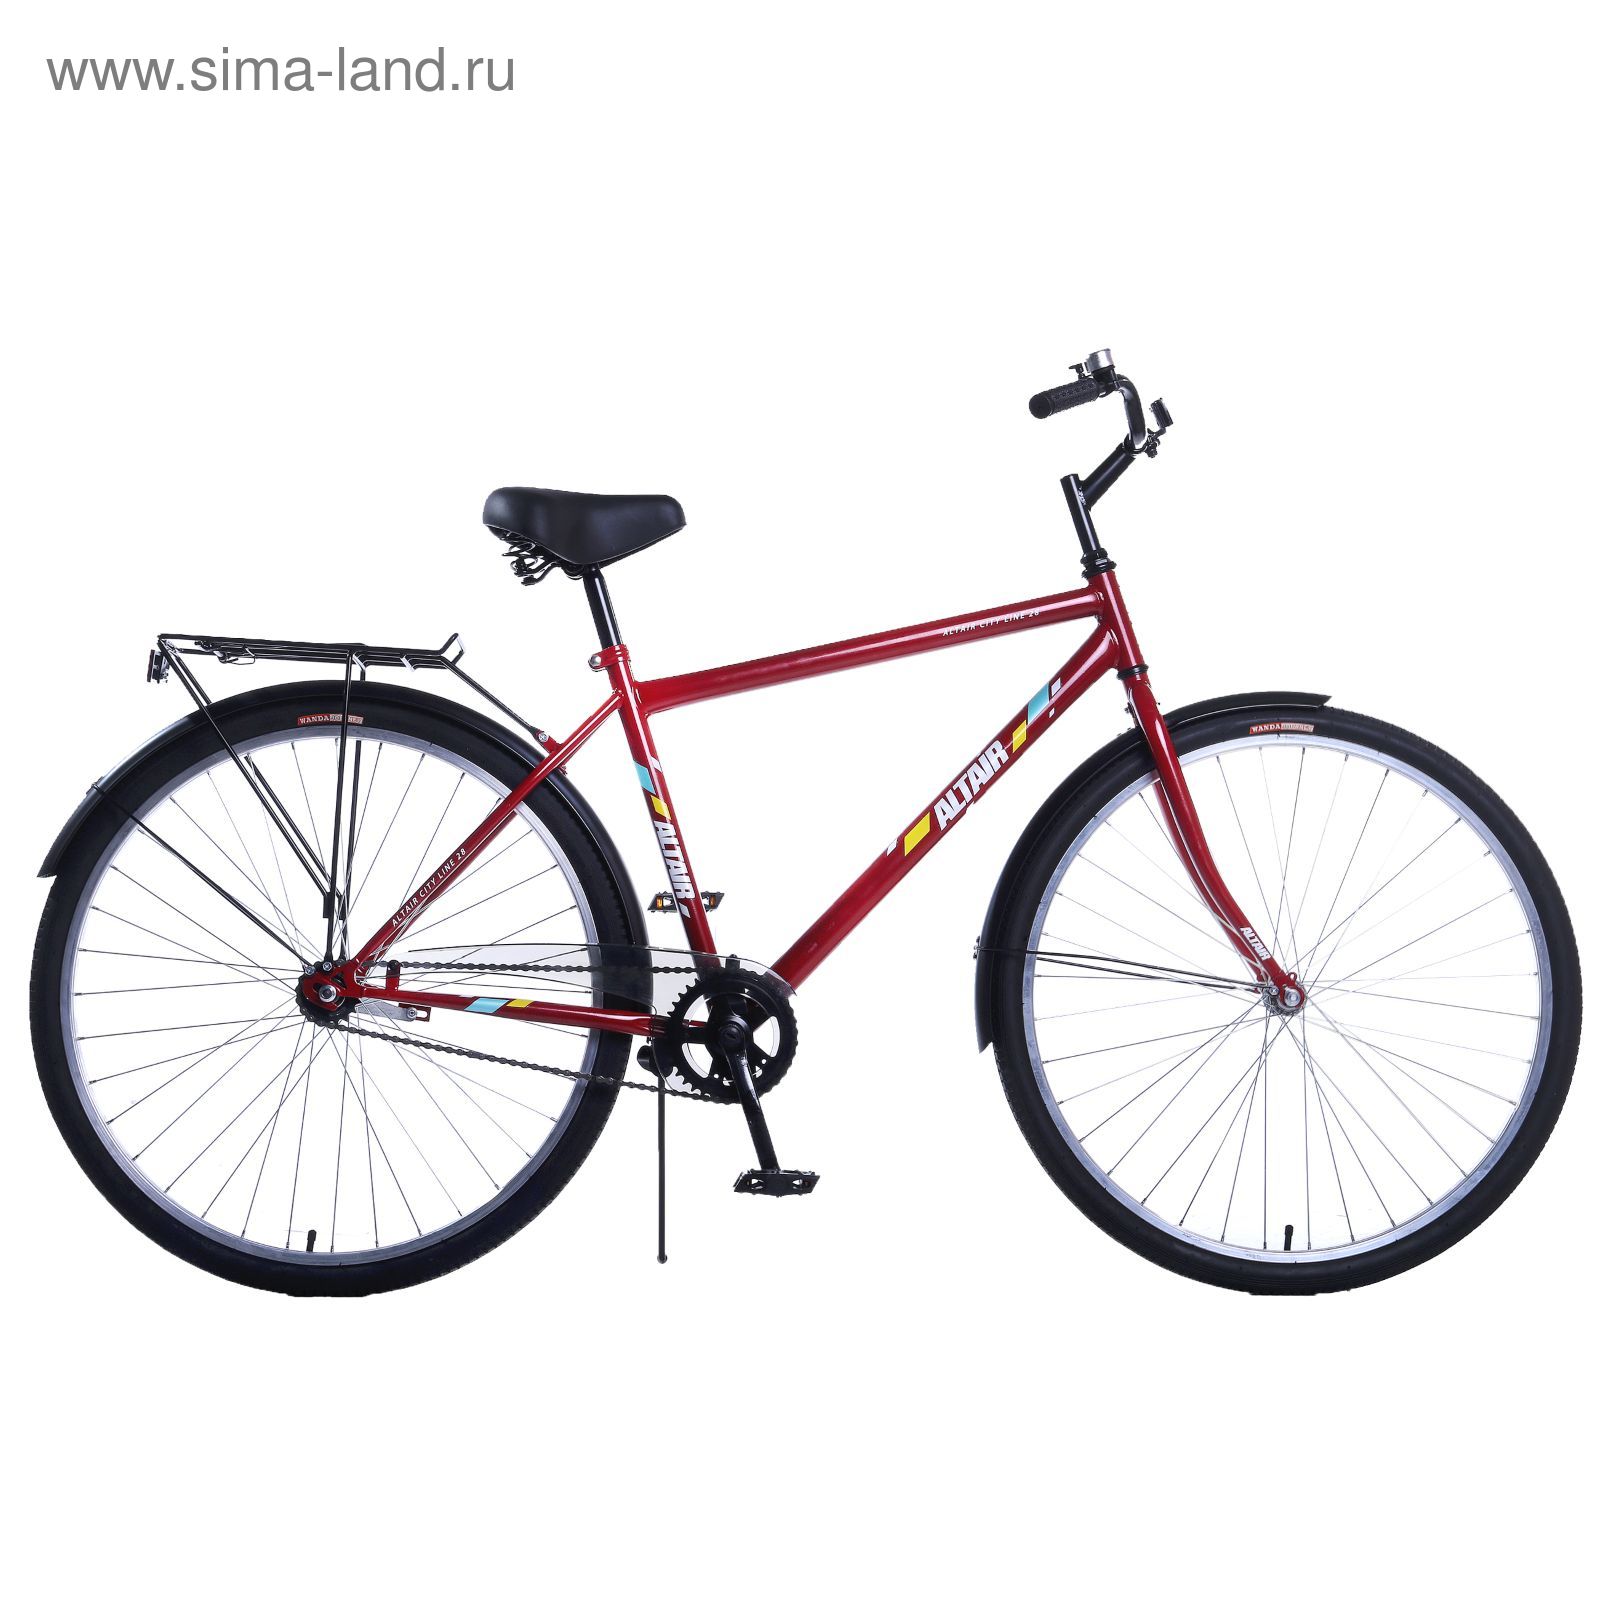 Купить Велосипед В Москве